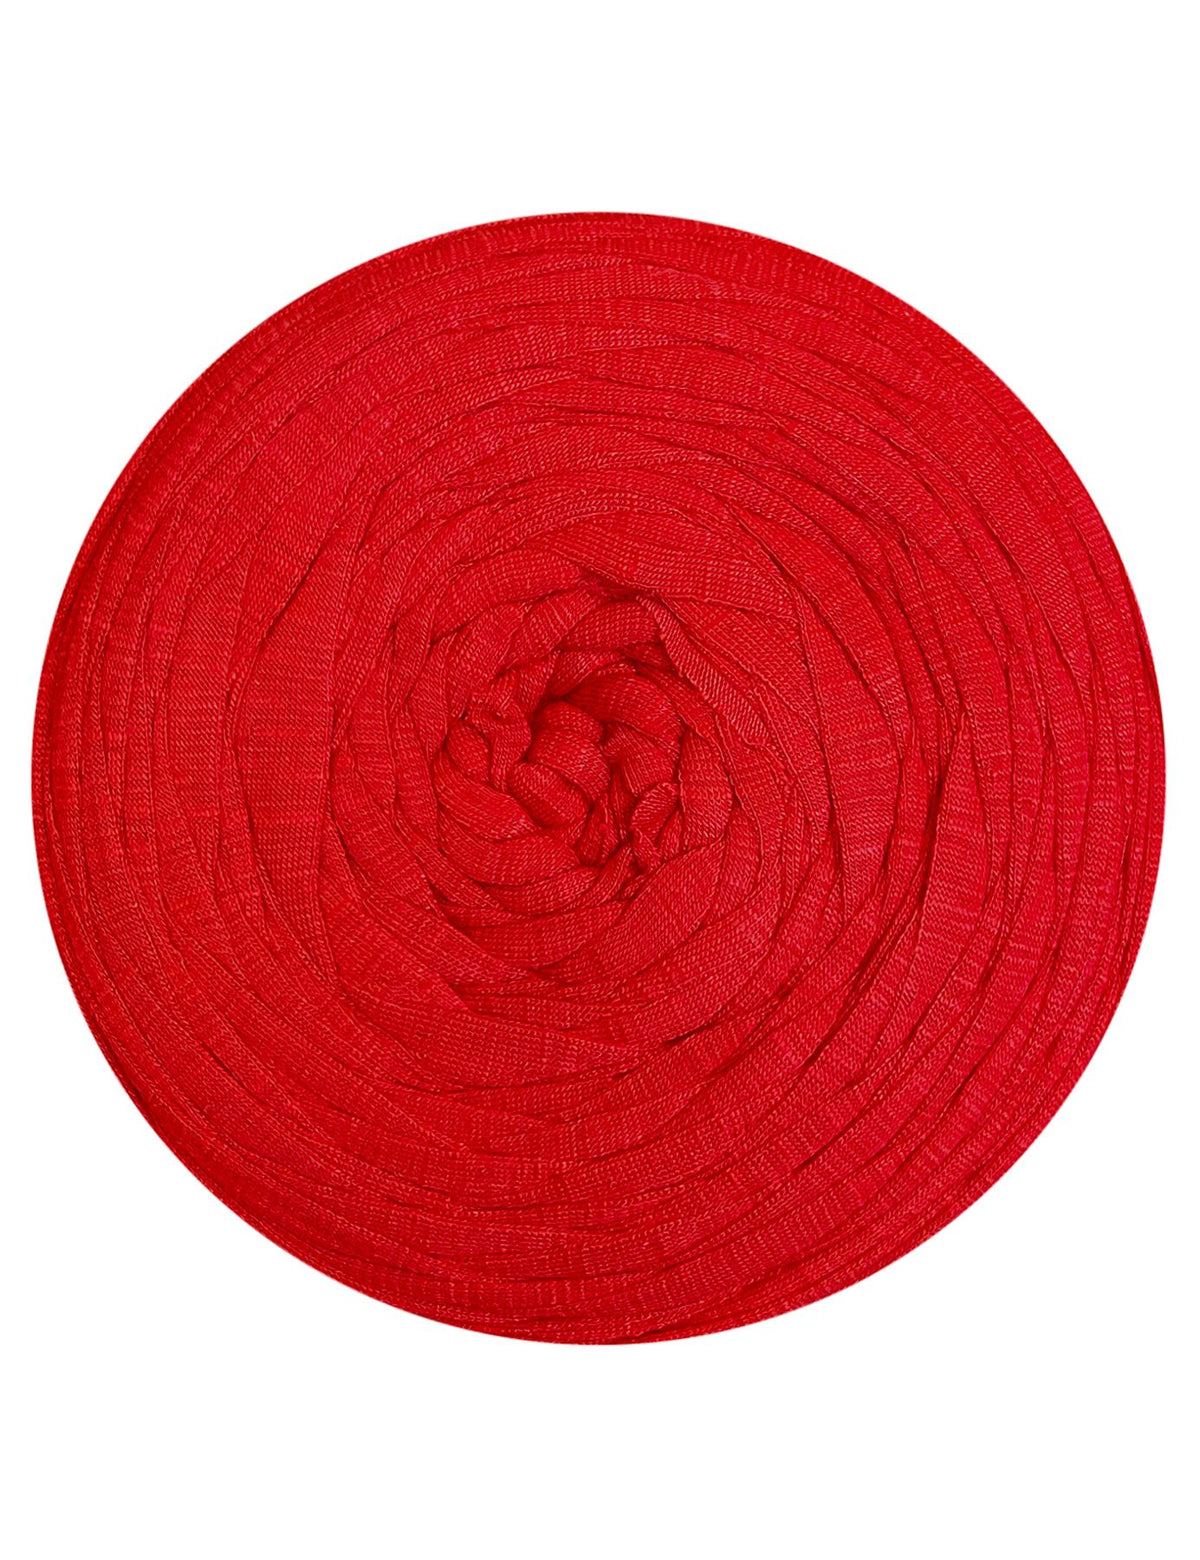 Shiny red t-shirt yarn by Rescue Yarn (100-120m)